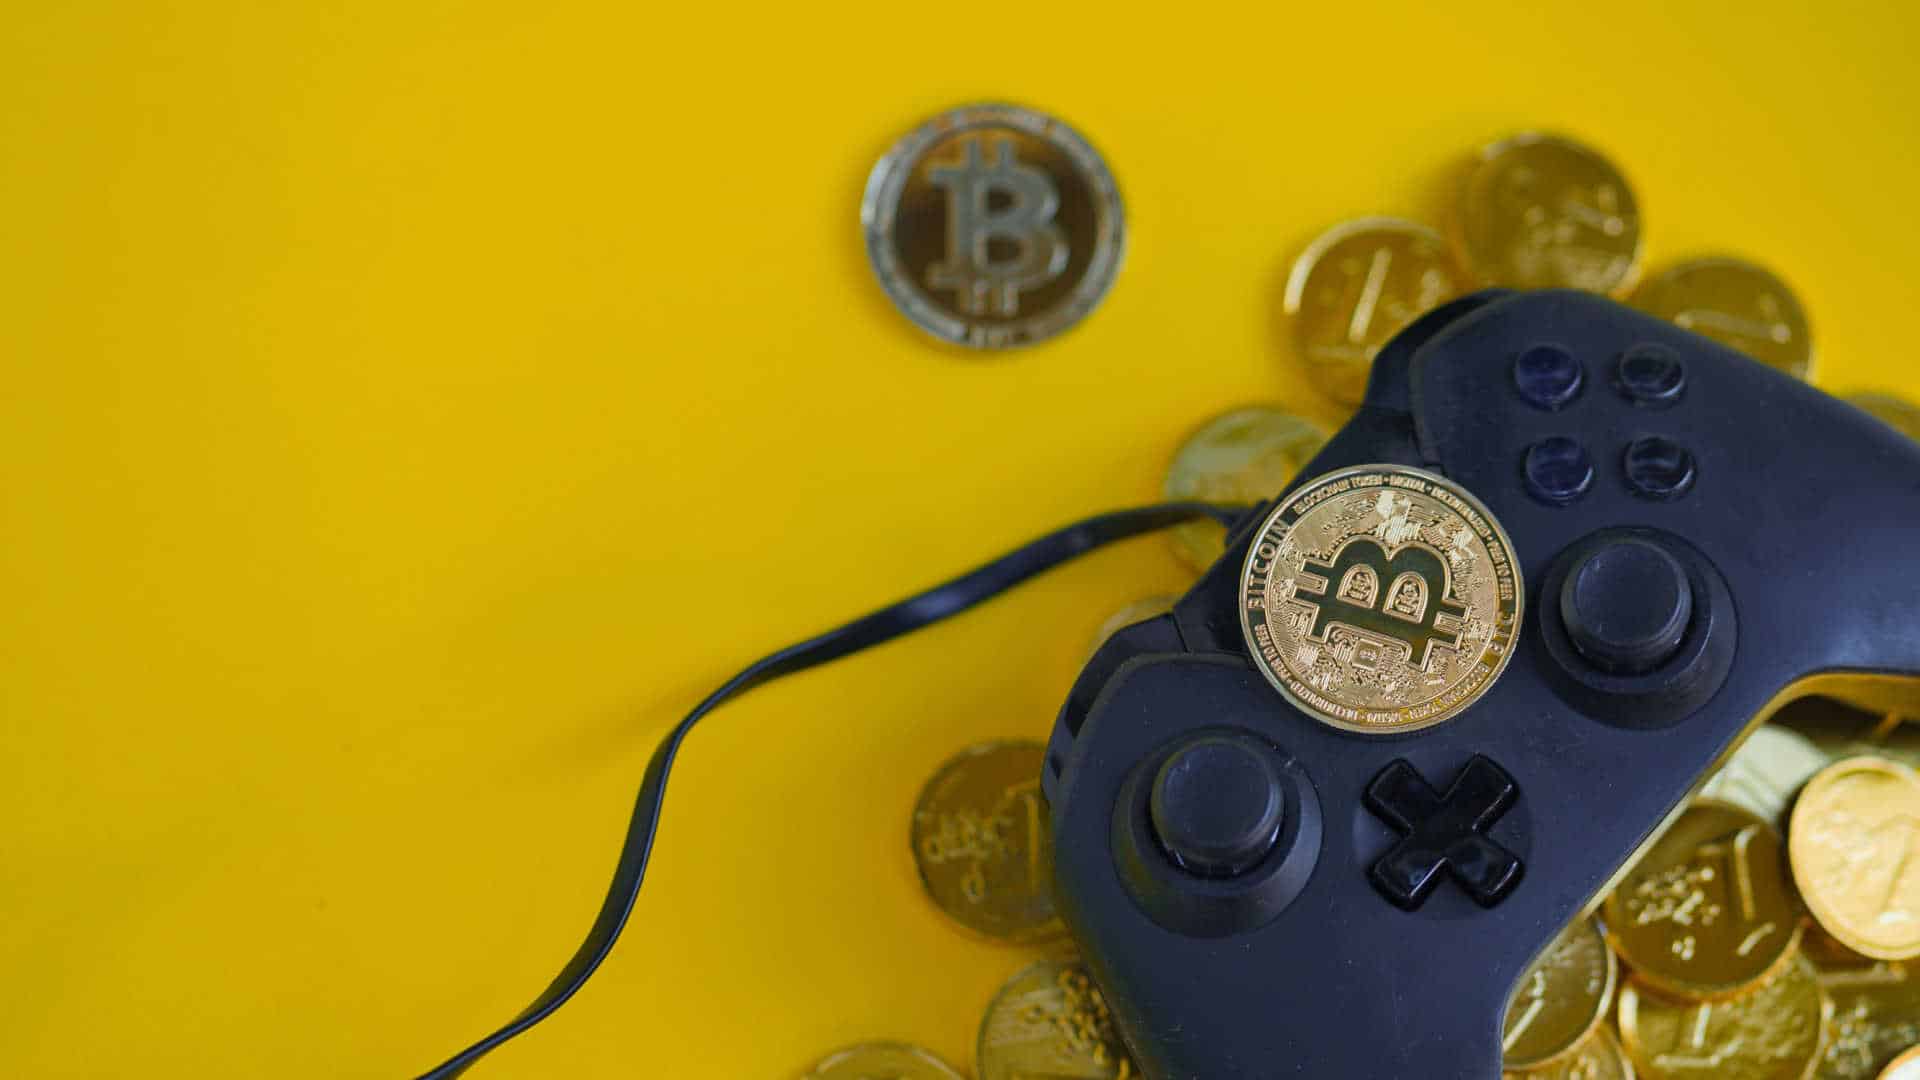 Controle de vídeo-game e moedas de bitcoin.